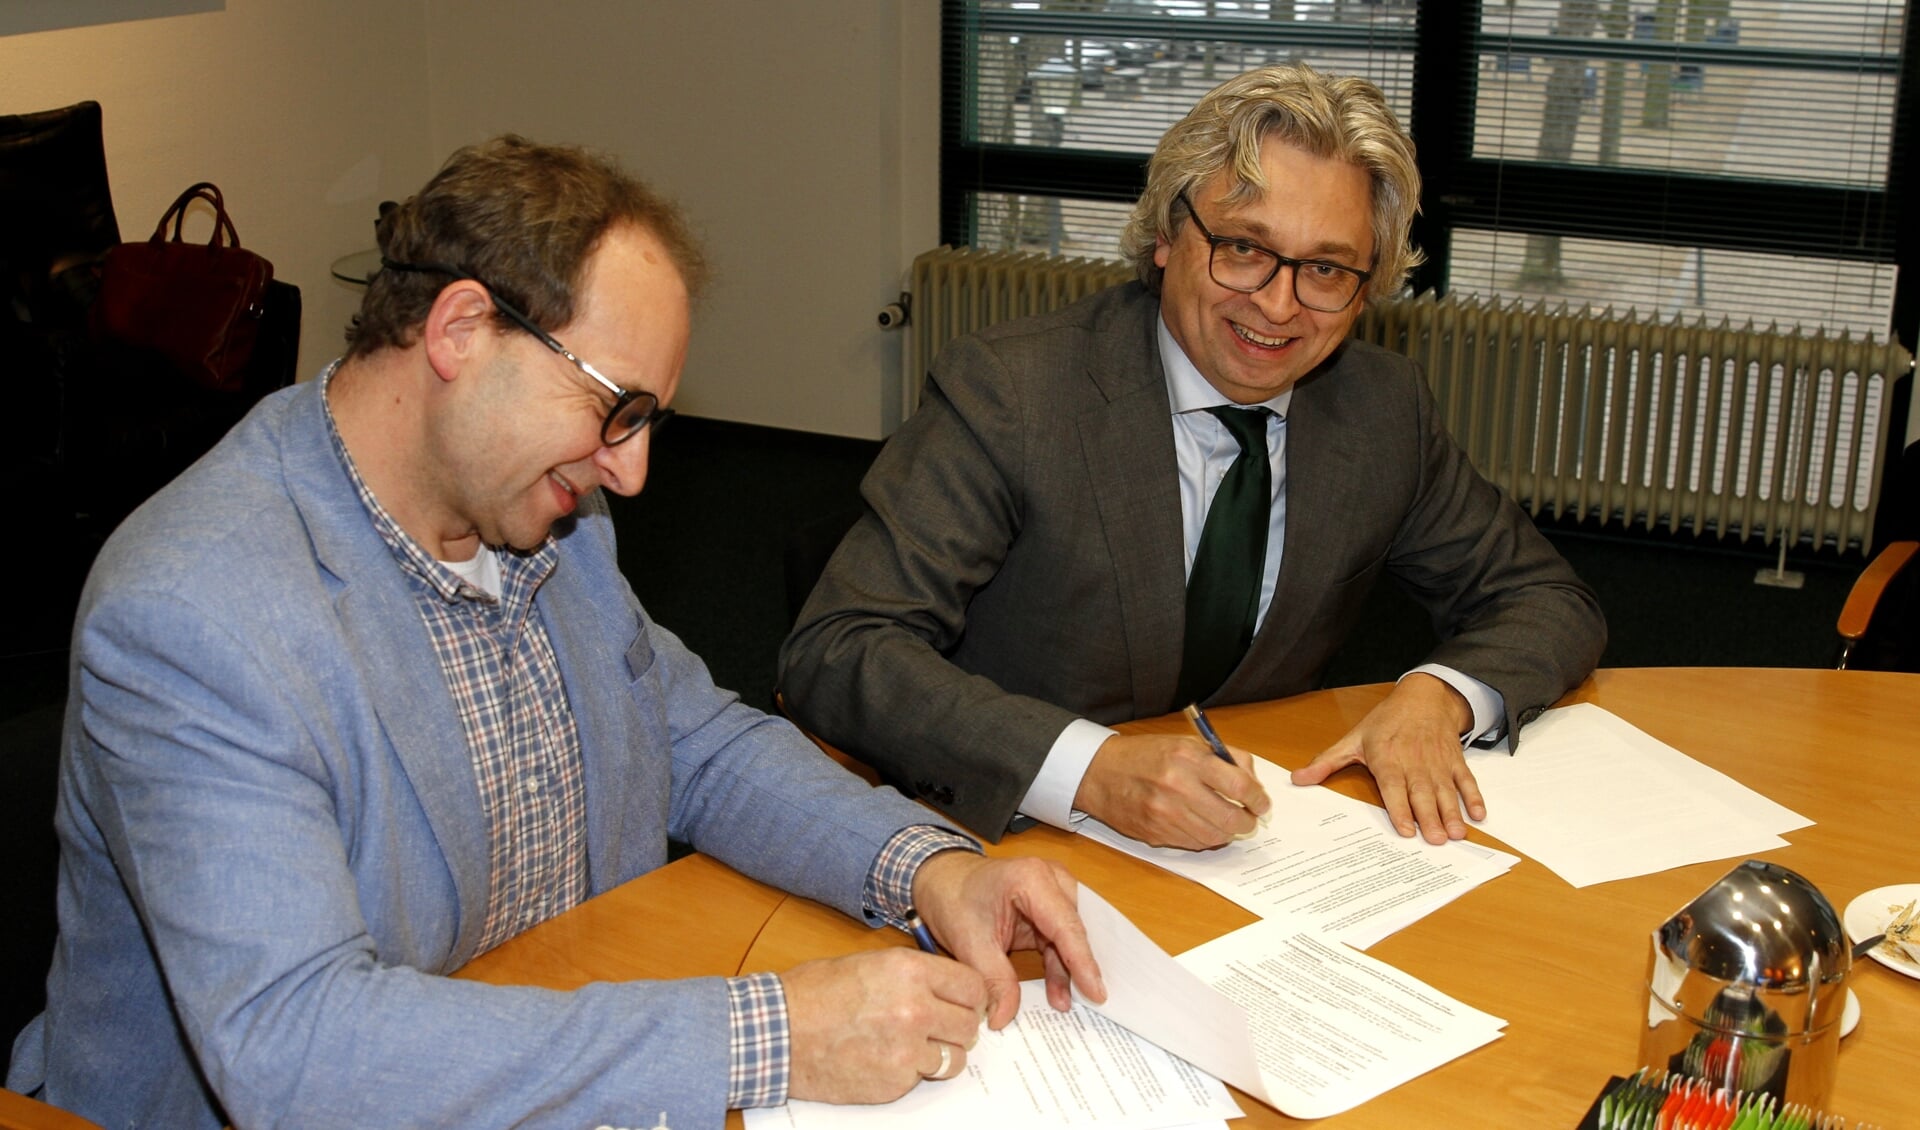 Michiel Werkhoven namens Janssen de Jong Projectontwikkeling en
Wouter Bollen namens de gemeente Sint Anthonis tekenen van de intentieverklaring Blauwstraat

